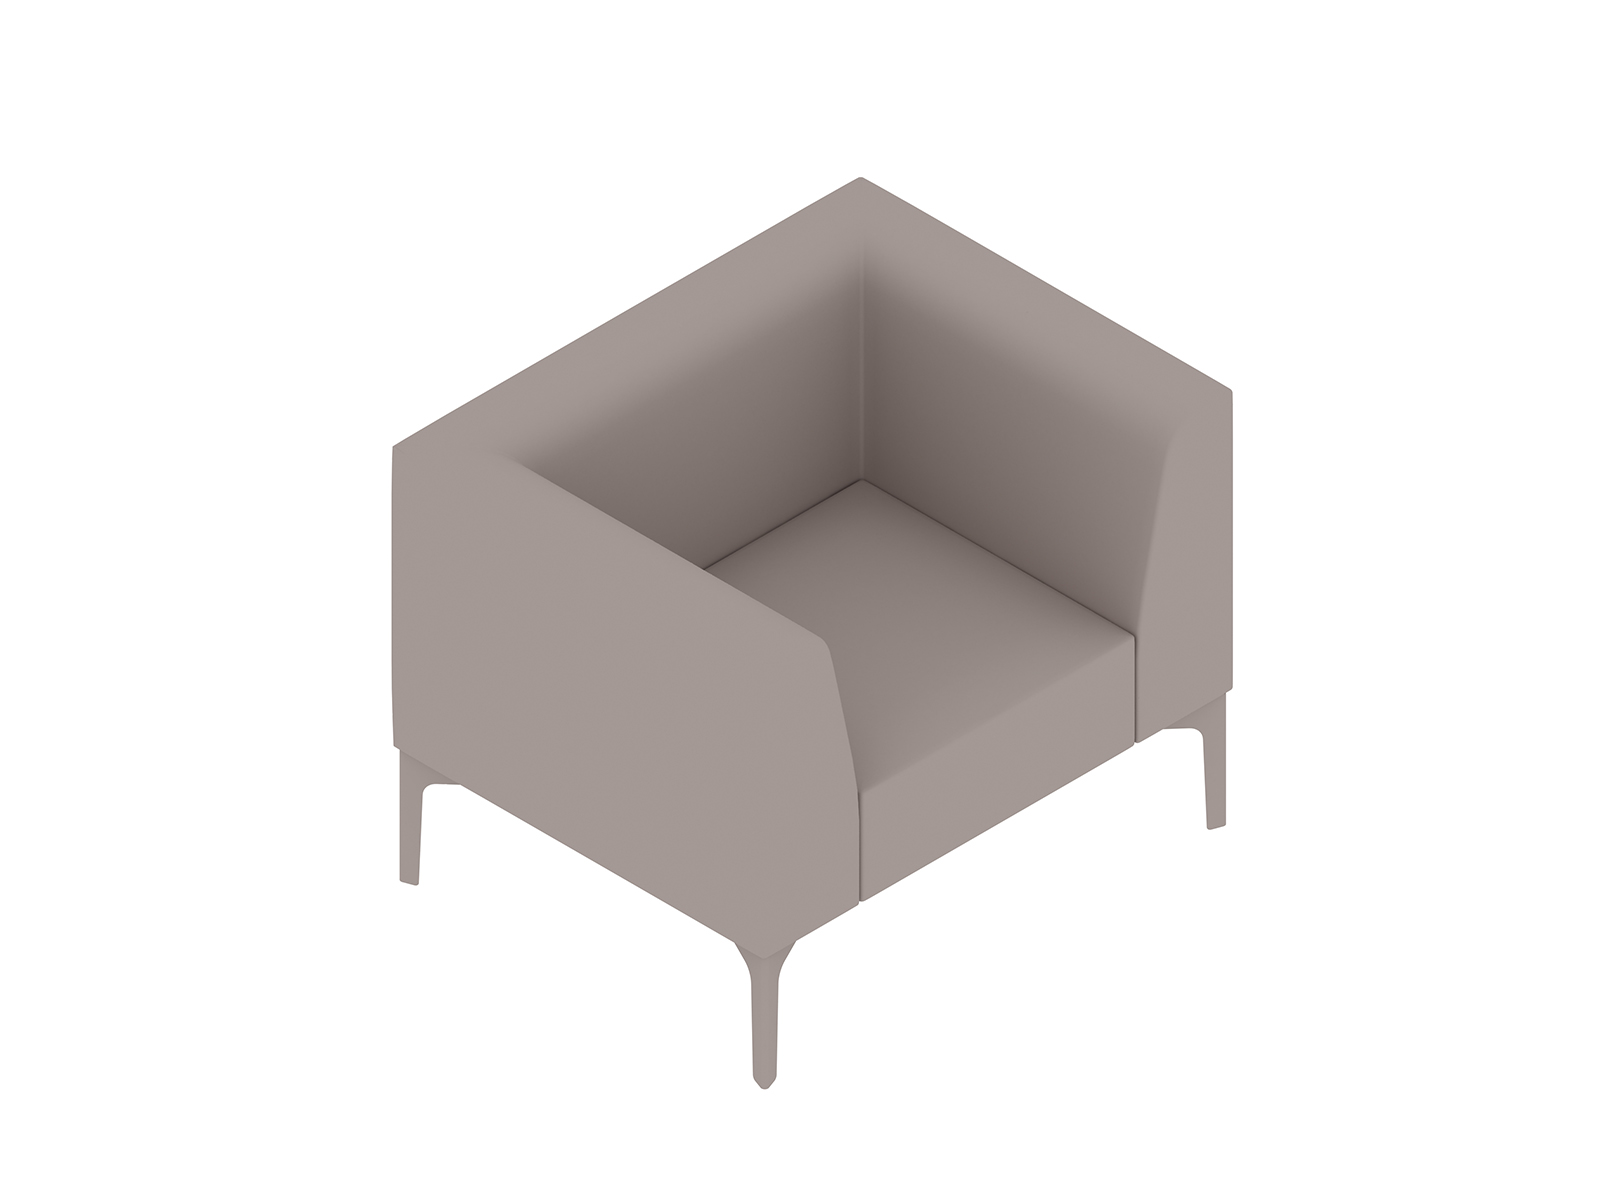 Un rendering generico - Seduta lounge Symbol